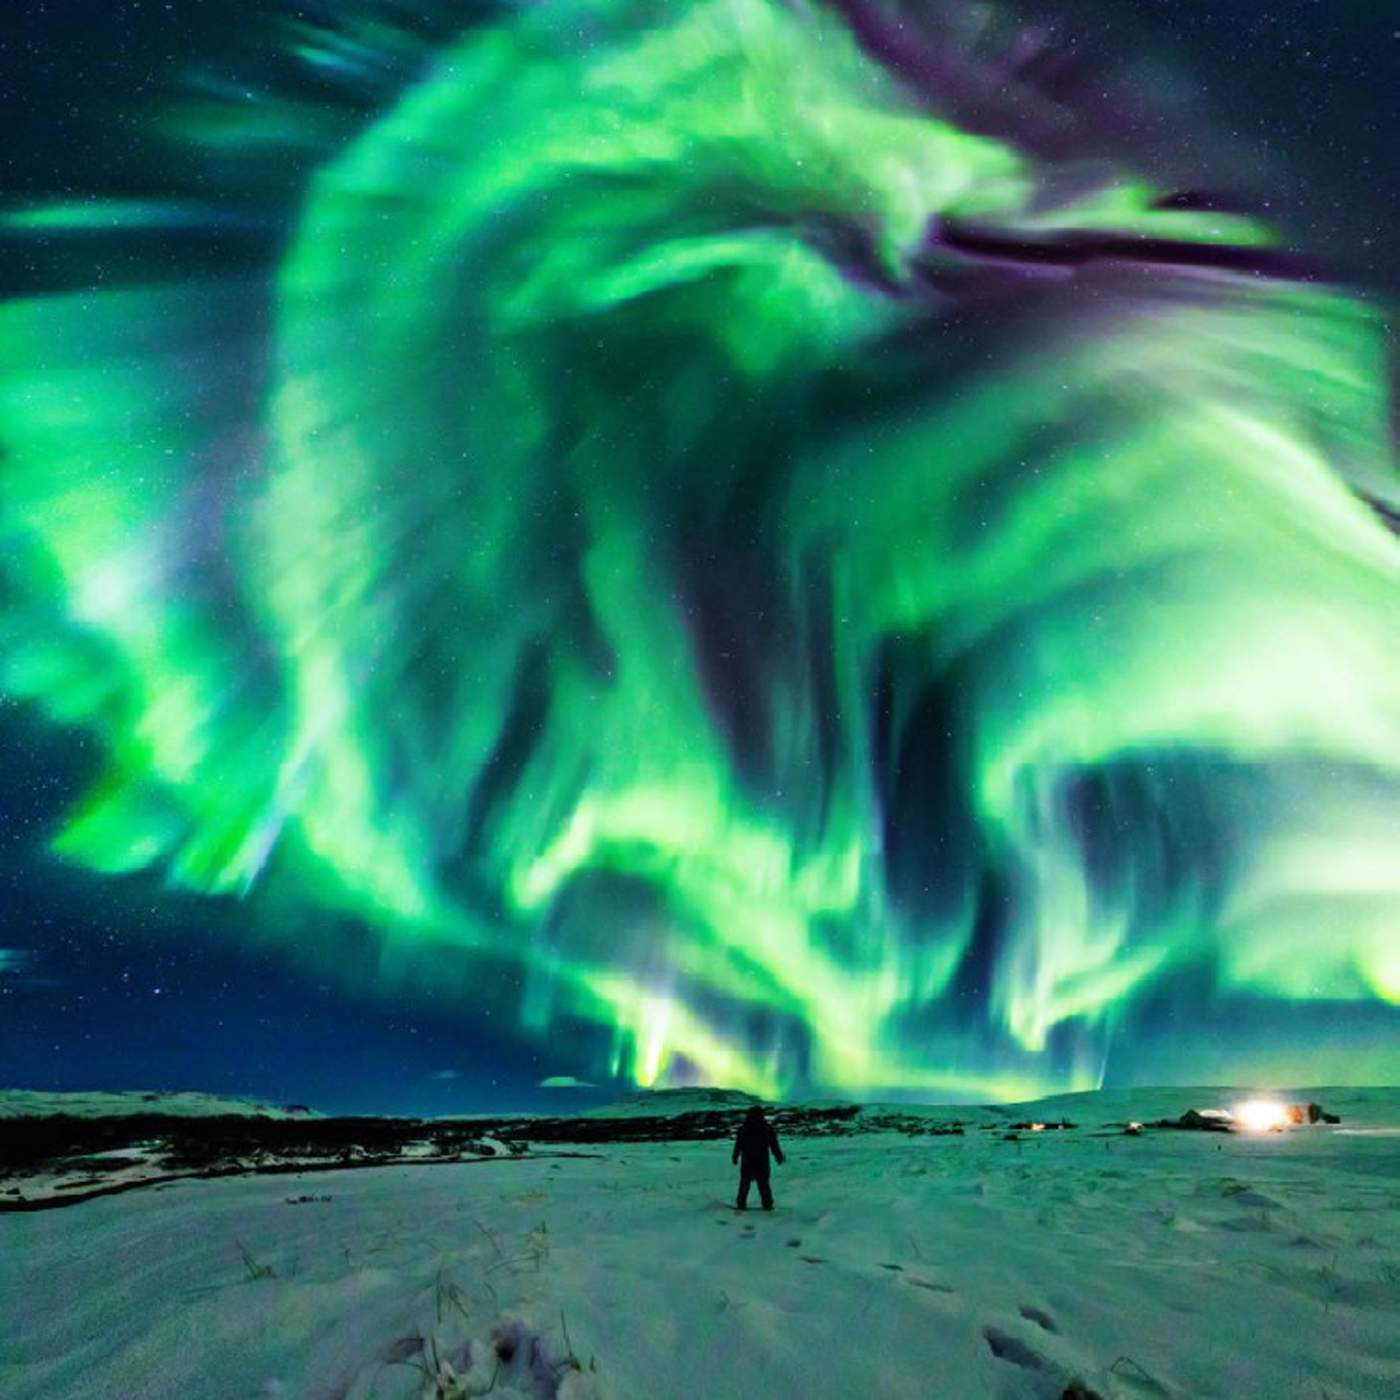 La NASA comparte una imagen alucinante de una aurora boreal